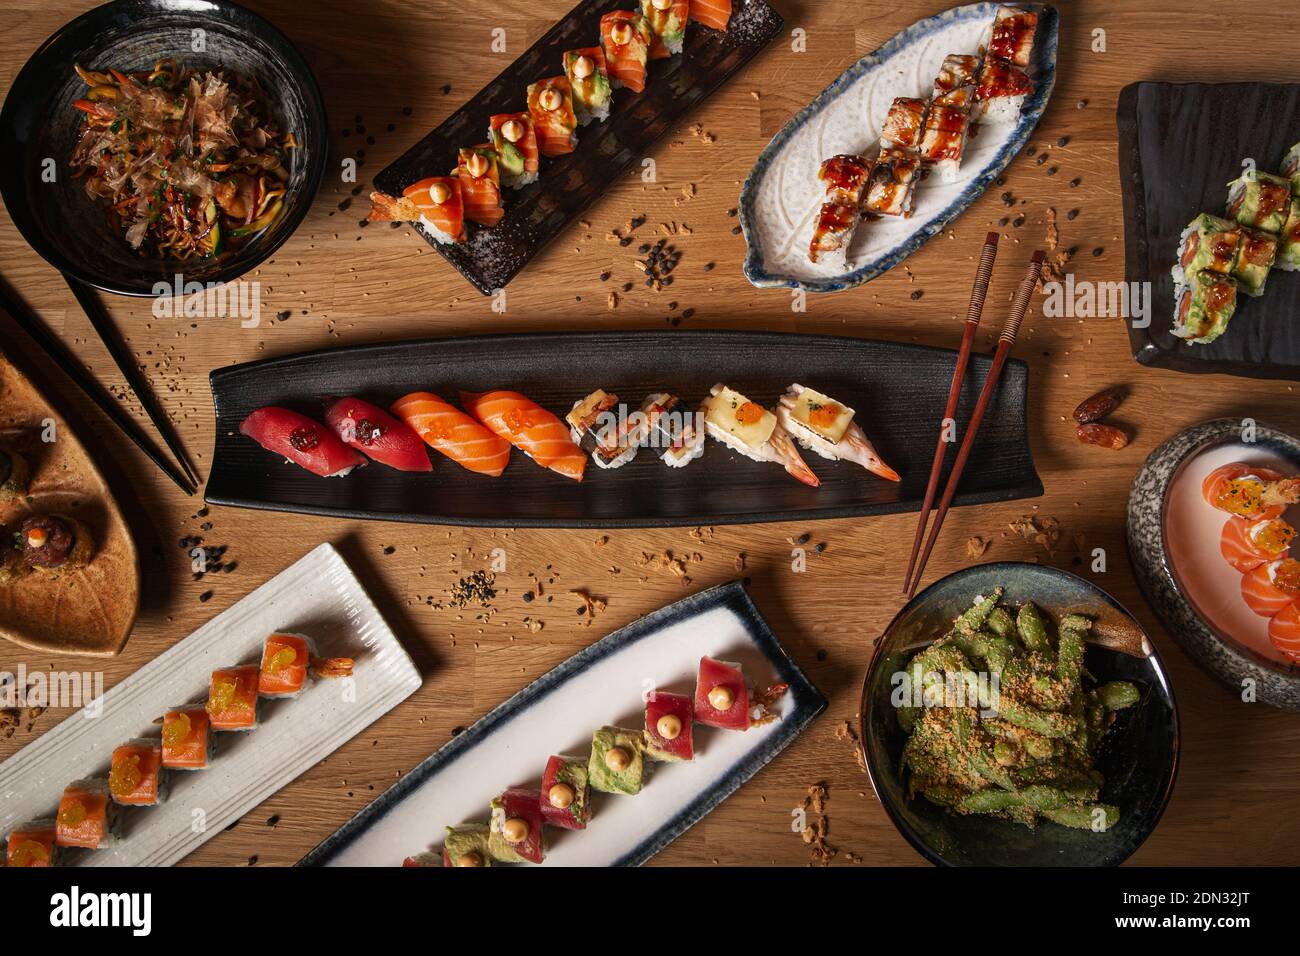 Image with various dishes of sushi, sashimi, nigiri, yakisoba and edamame on the restaurant table Stock Photo